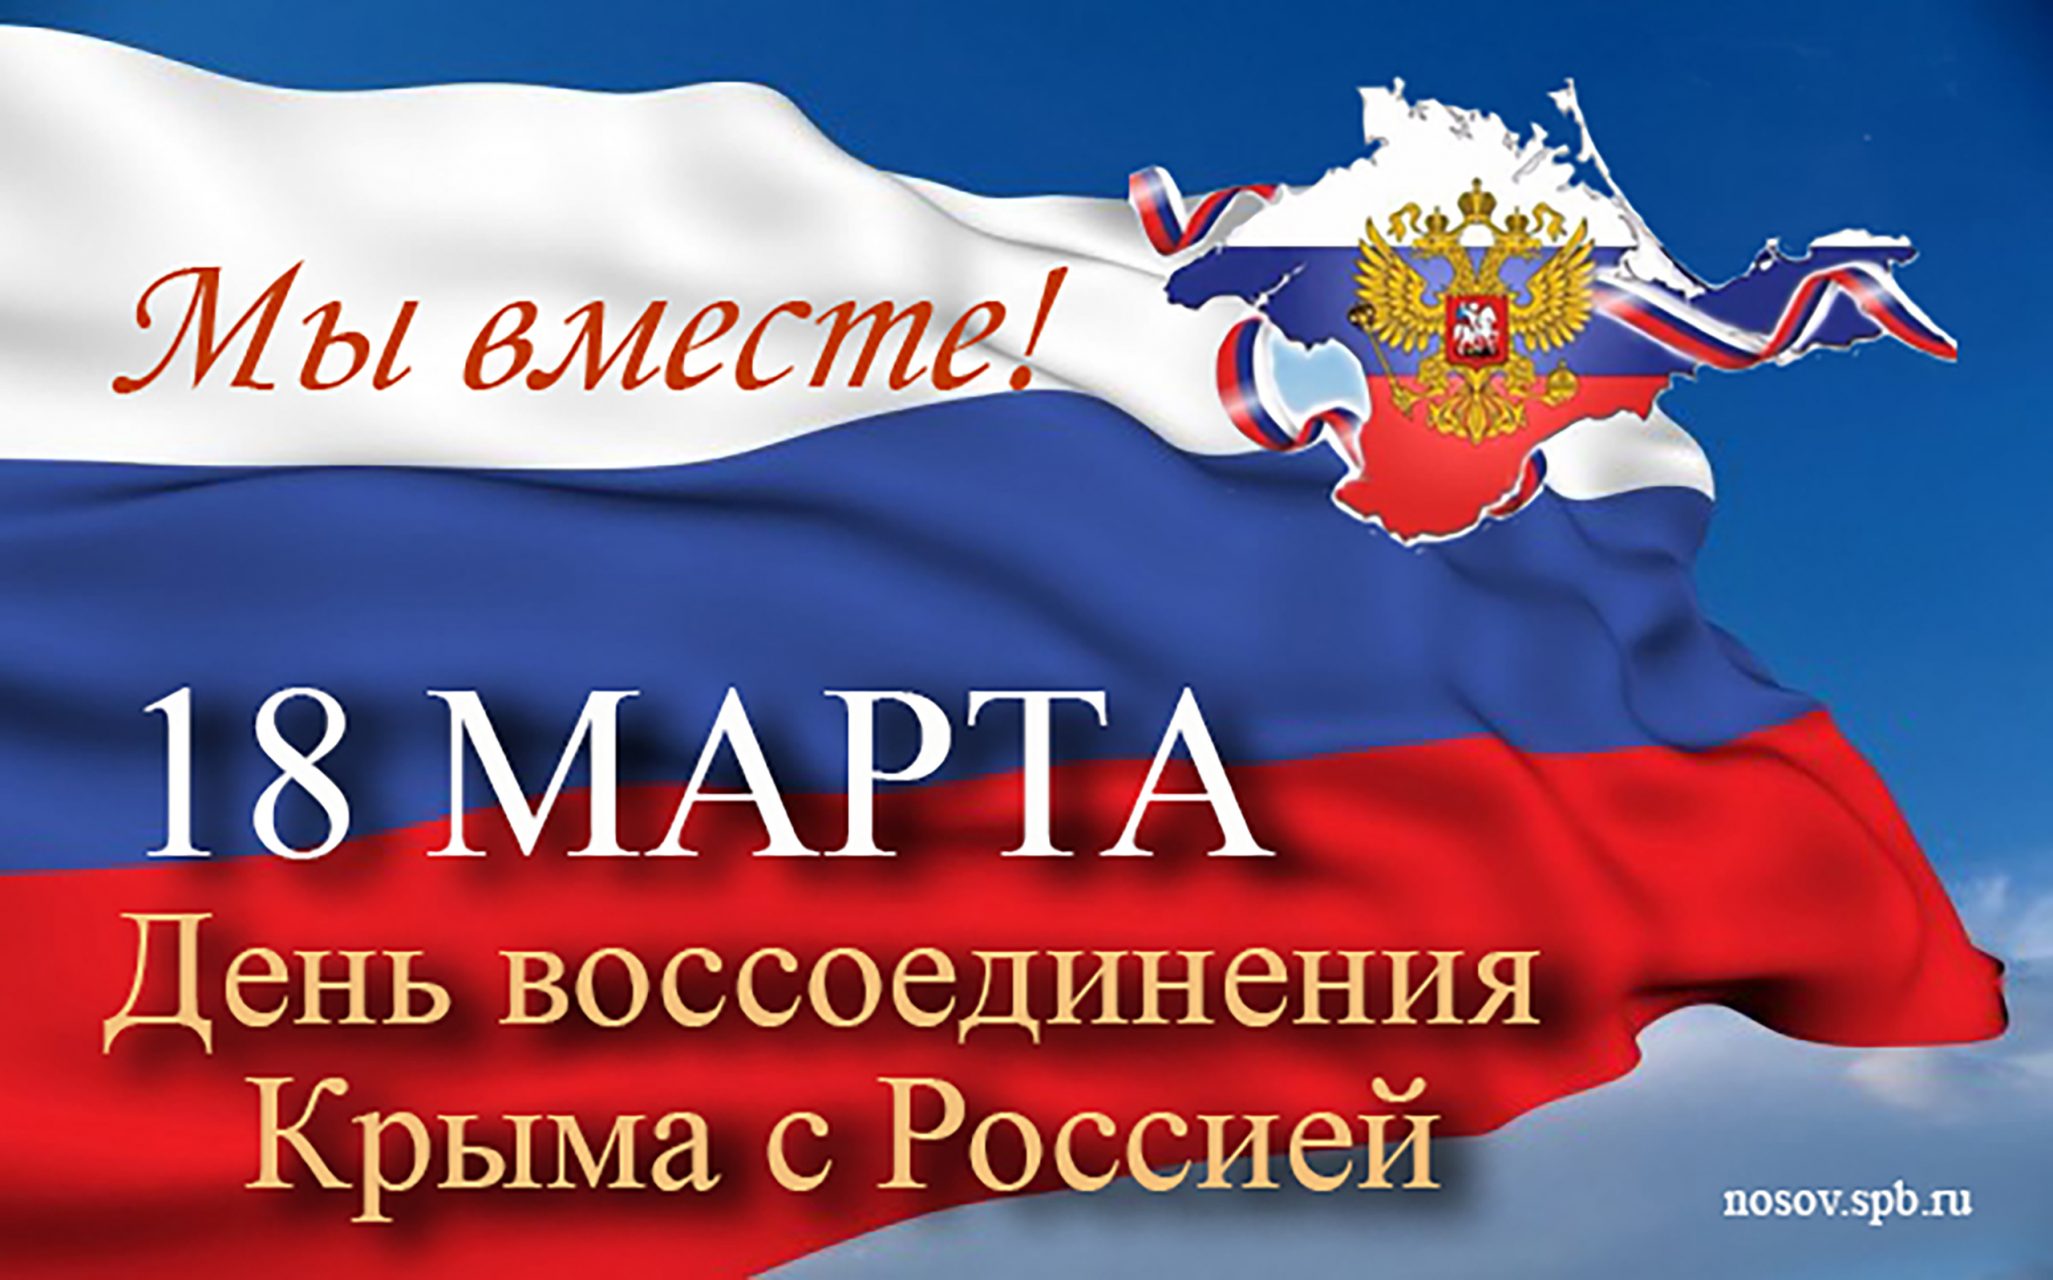 Поздравление с Днем воссоединения Крыма с Россией!